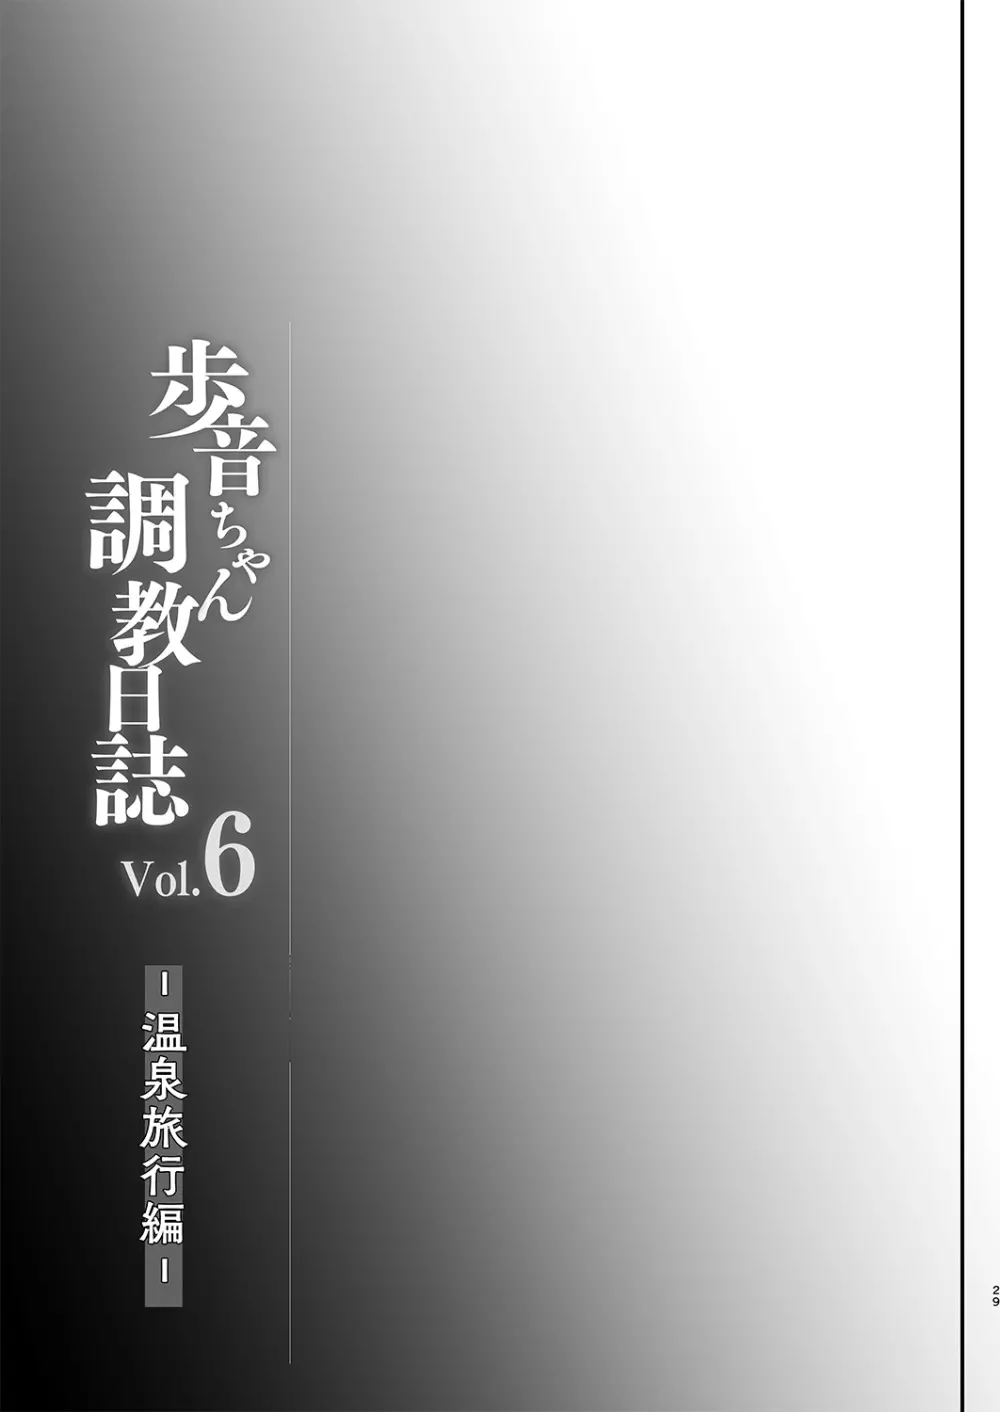 歩音ちゃん調教日誌vol.6 -温泉旅行編- 30ページ